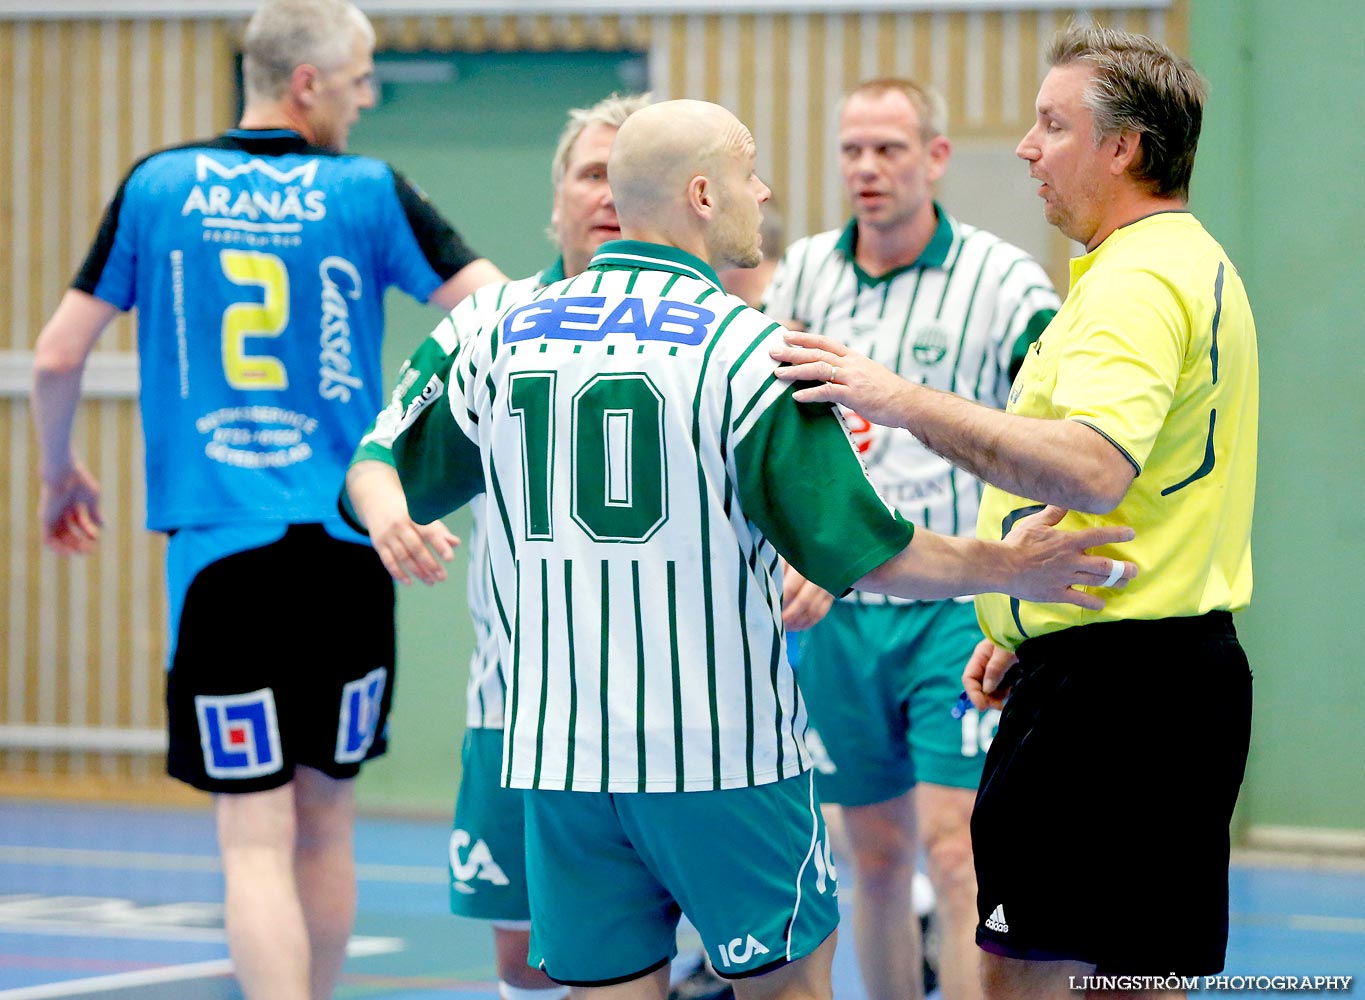 Trim-SM Herrar Västra Frölunda IF-HK Aranäs 11-8,herr,Arena Skövde,Skövde,Sverige,Handboll,,2015,116761